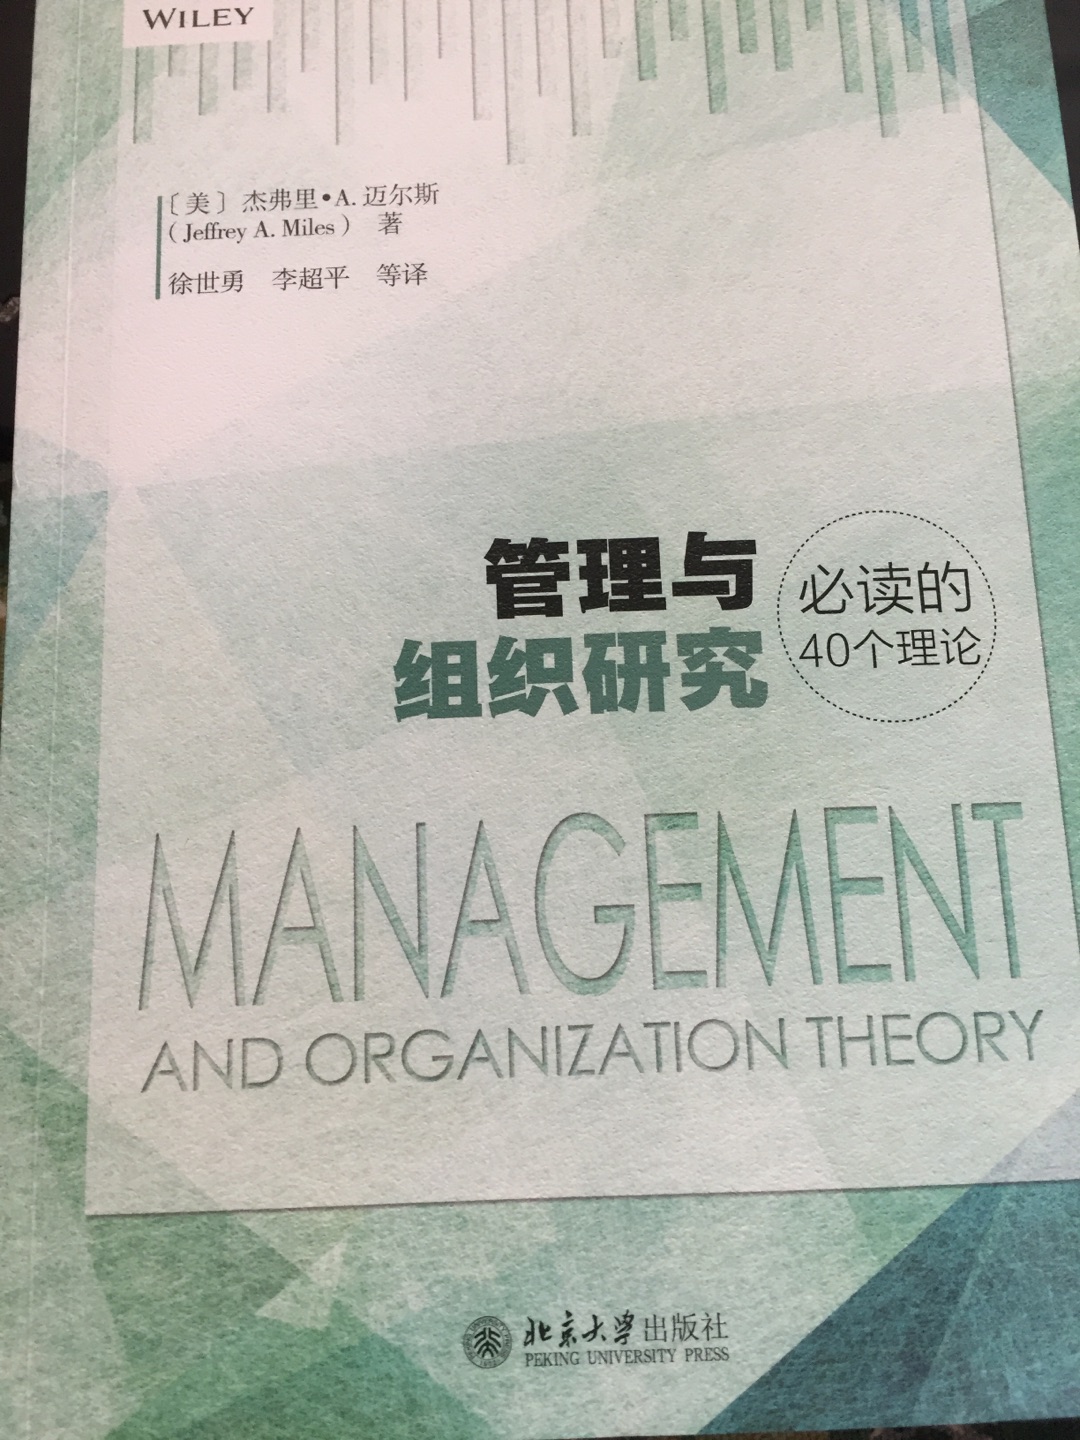 看了一半了，内容是对于一些管理理论的介绍和分析，算是管理理论的综述性的书